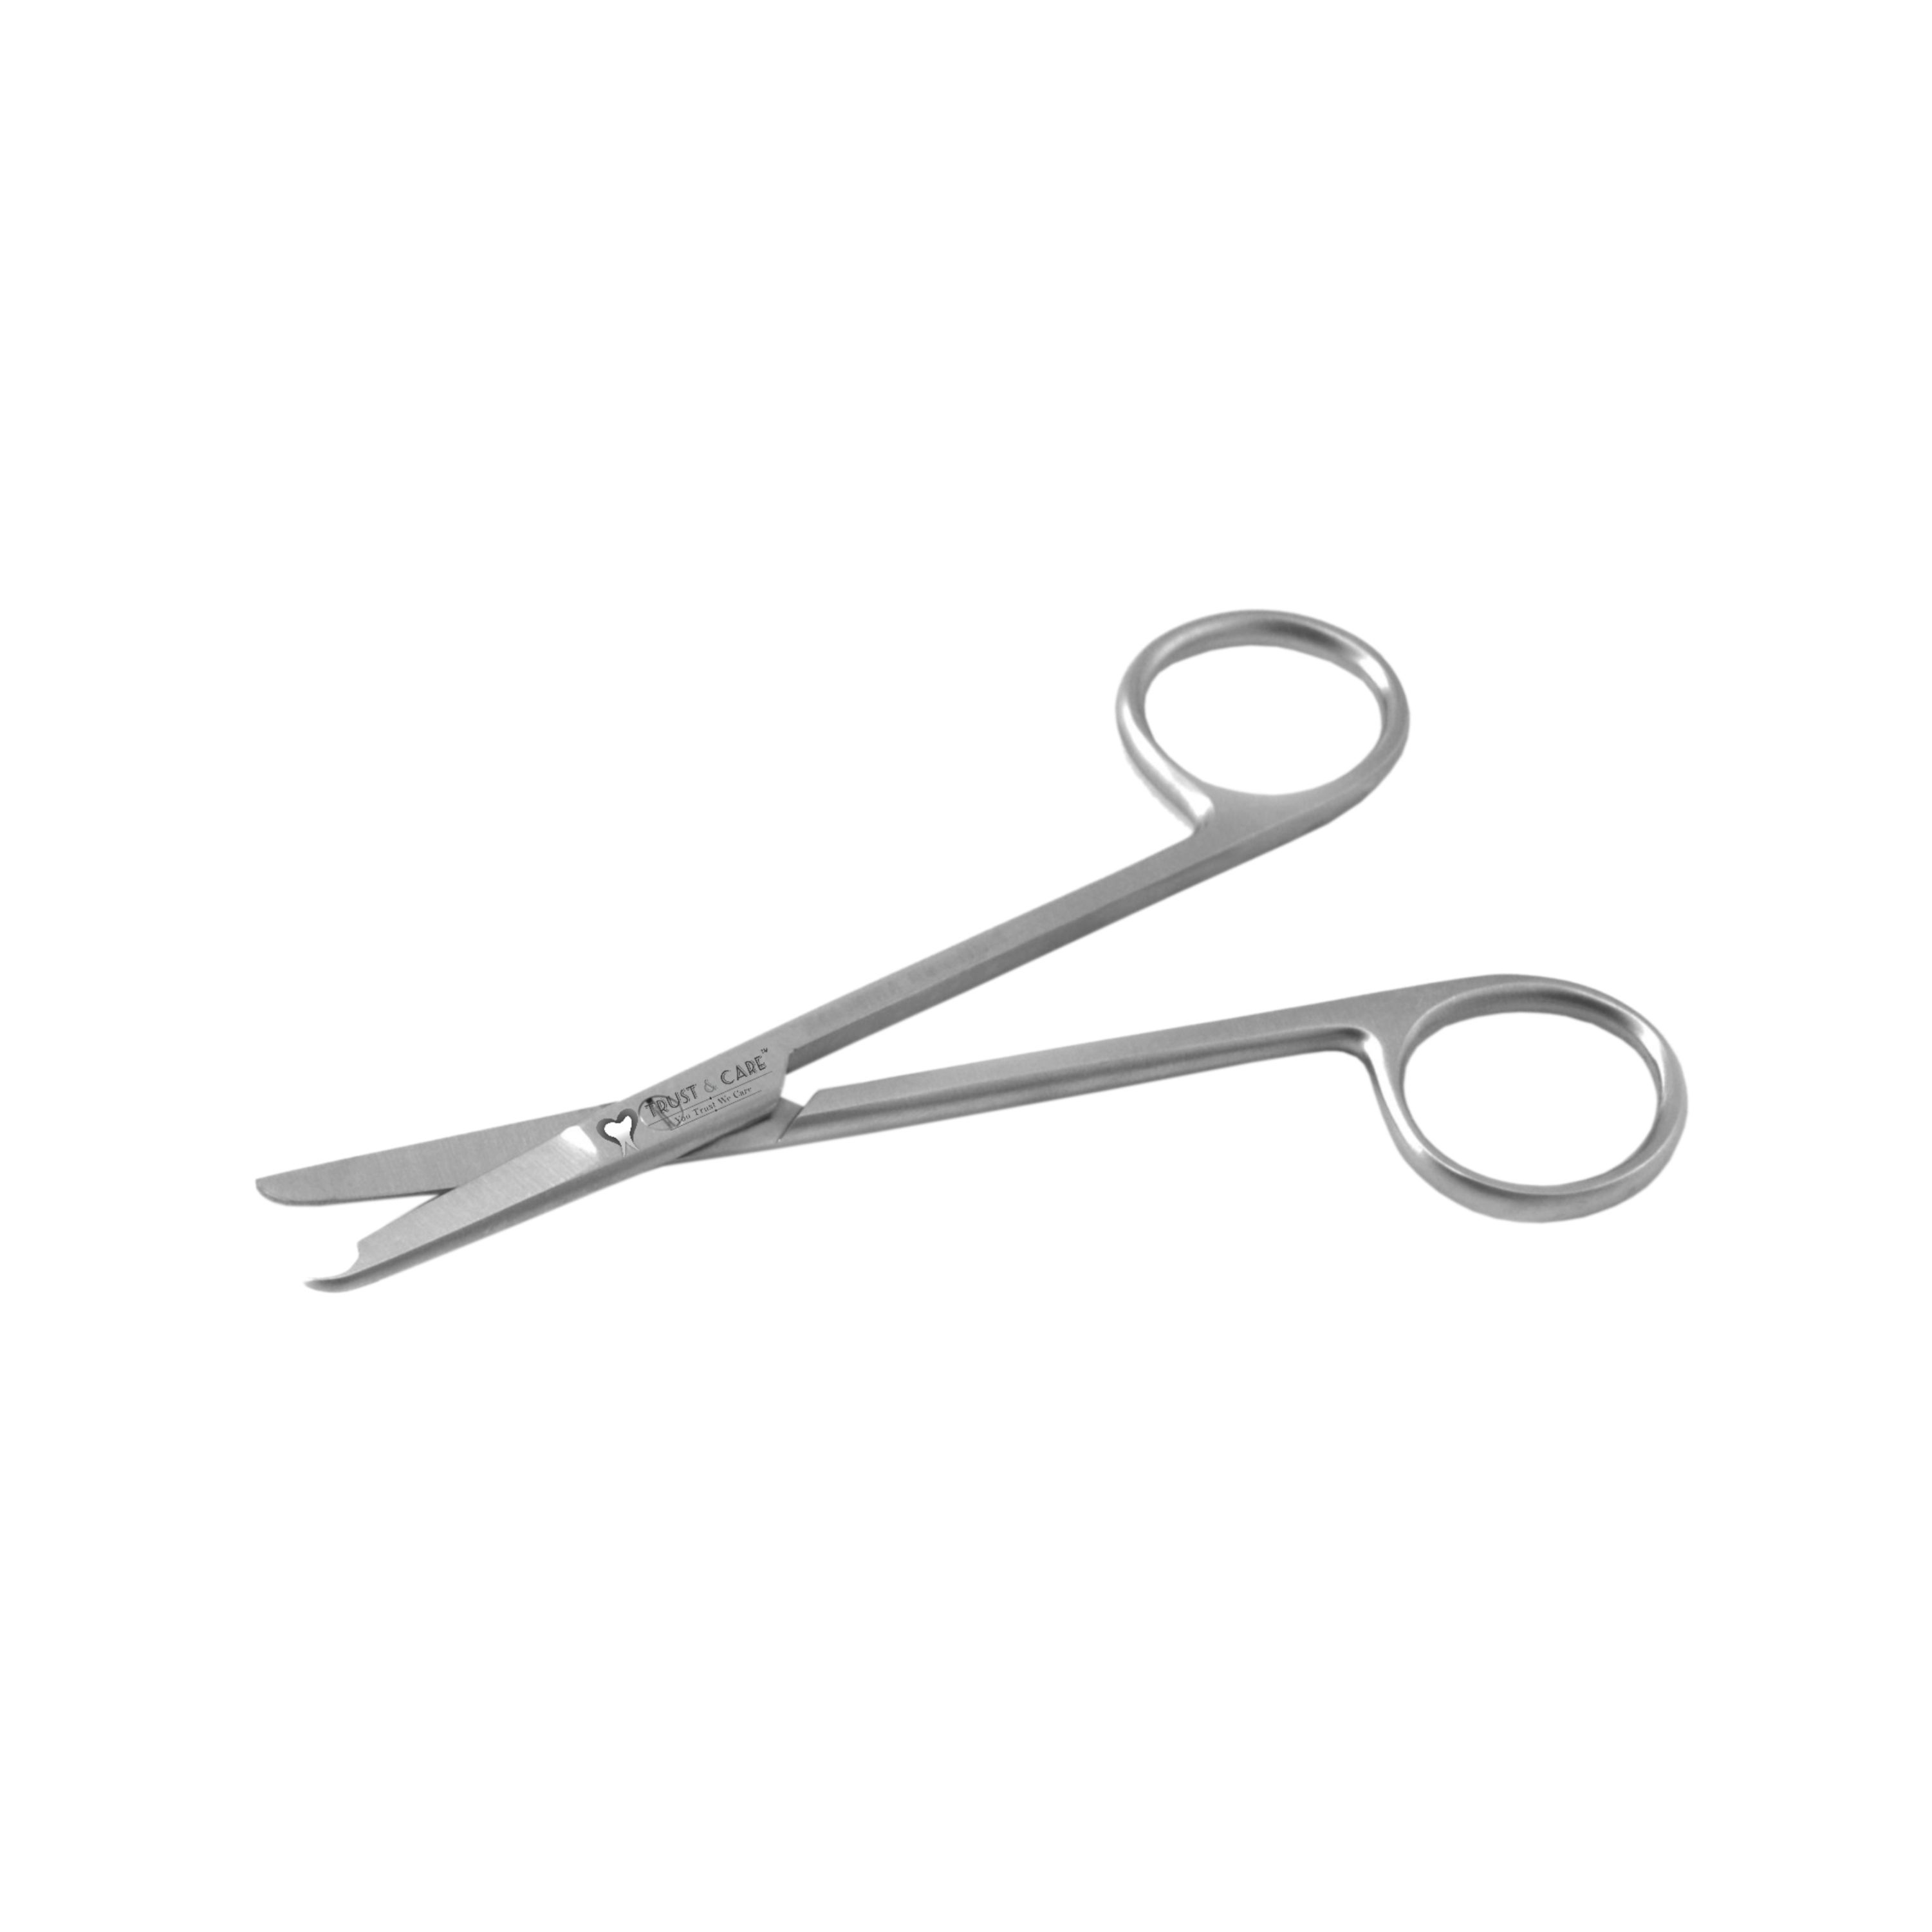 Trust & Care Spencer Suture Cutting Scissor 13 Cm Straight